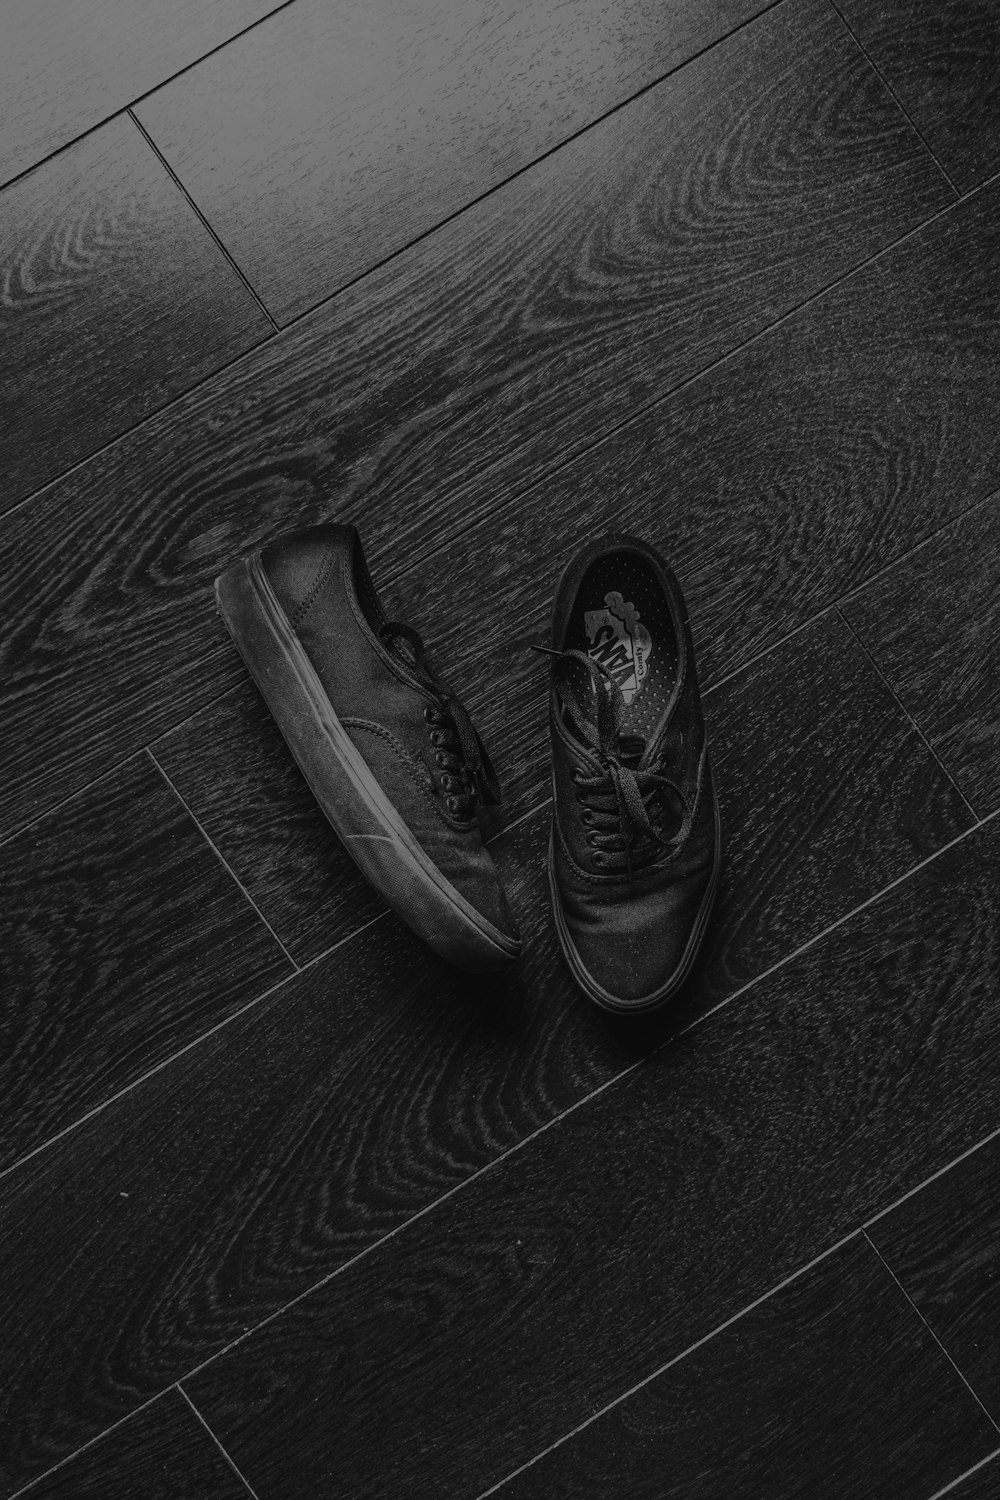 chaussures en cuir noir sur parquet noir